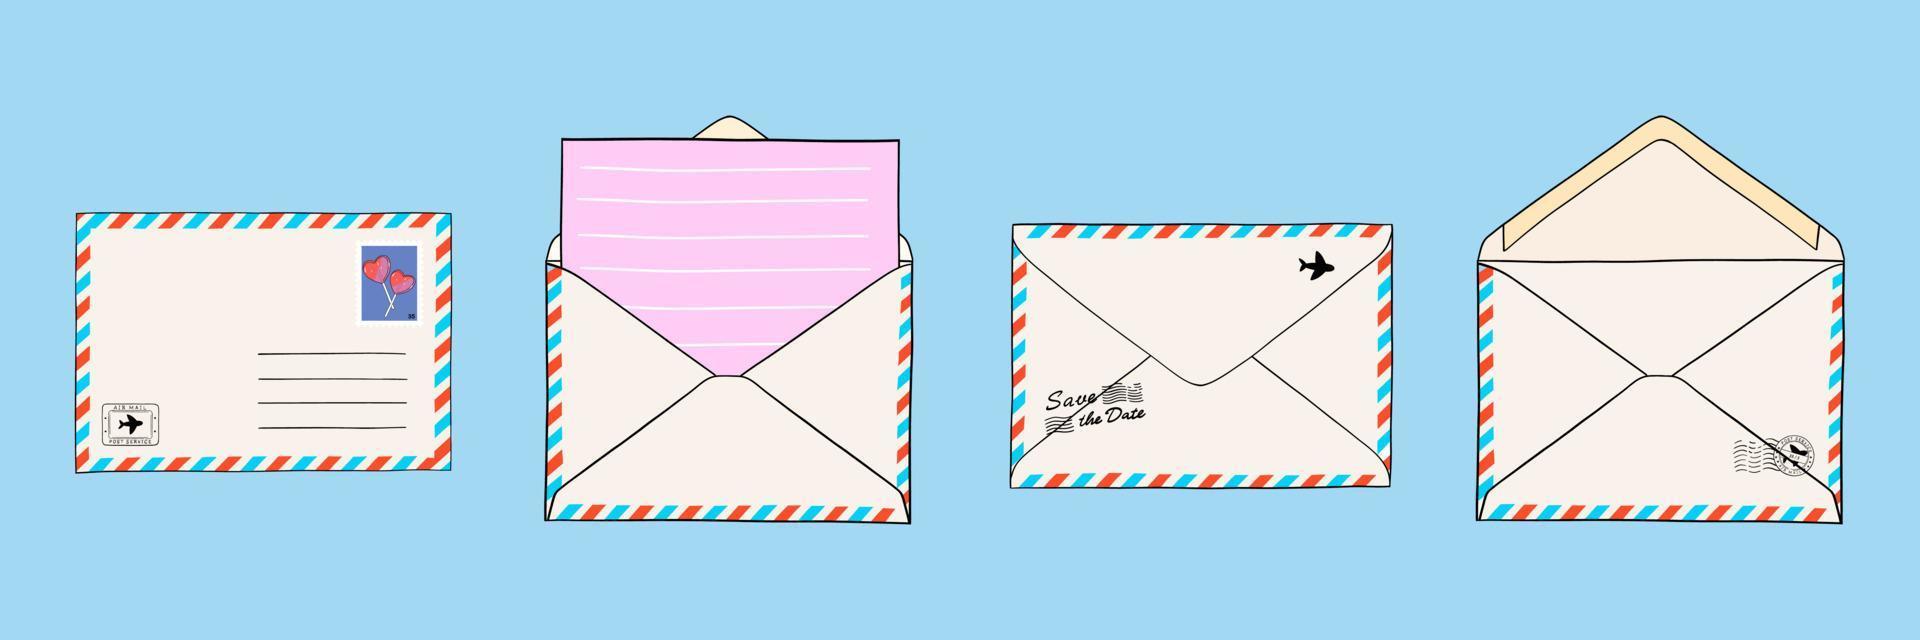 collection d'enveloppes postales avec courrier, cachets de la poste et cartes postales. document papier enfermé dans une enveloppe. illustrations vectorielles isolées pour le web et l'impression vecteur